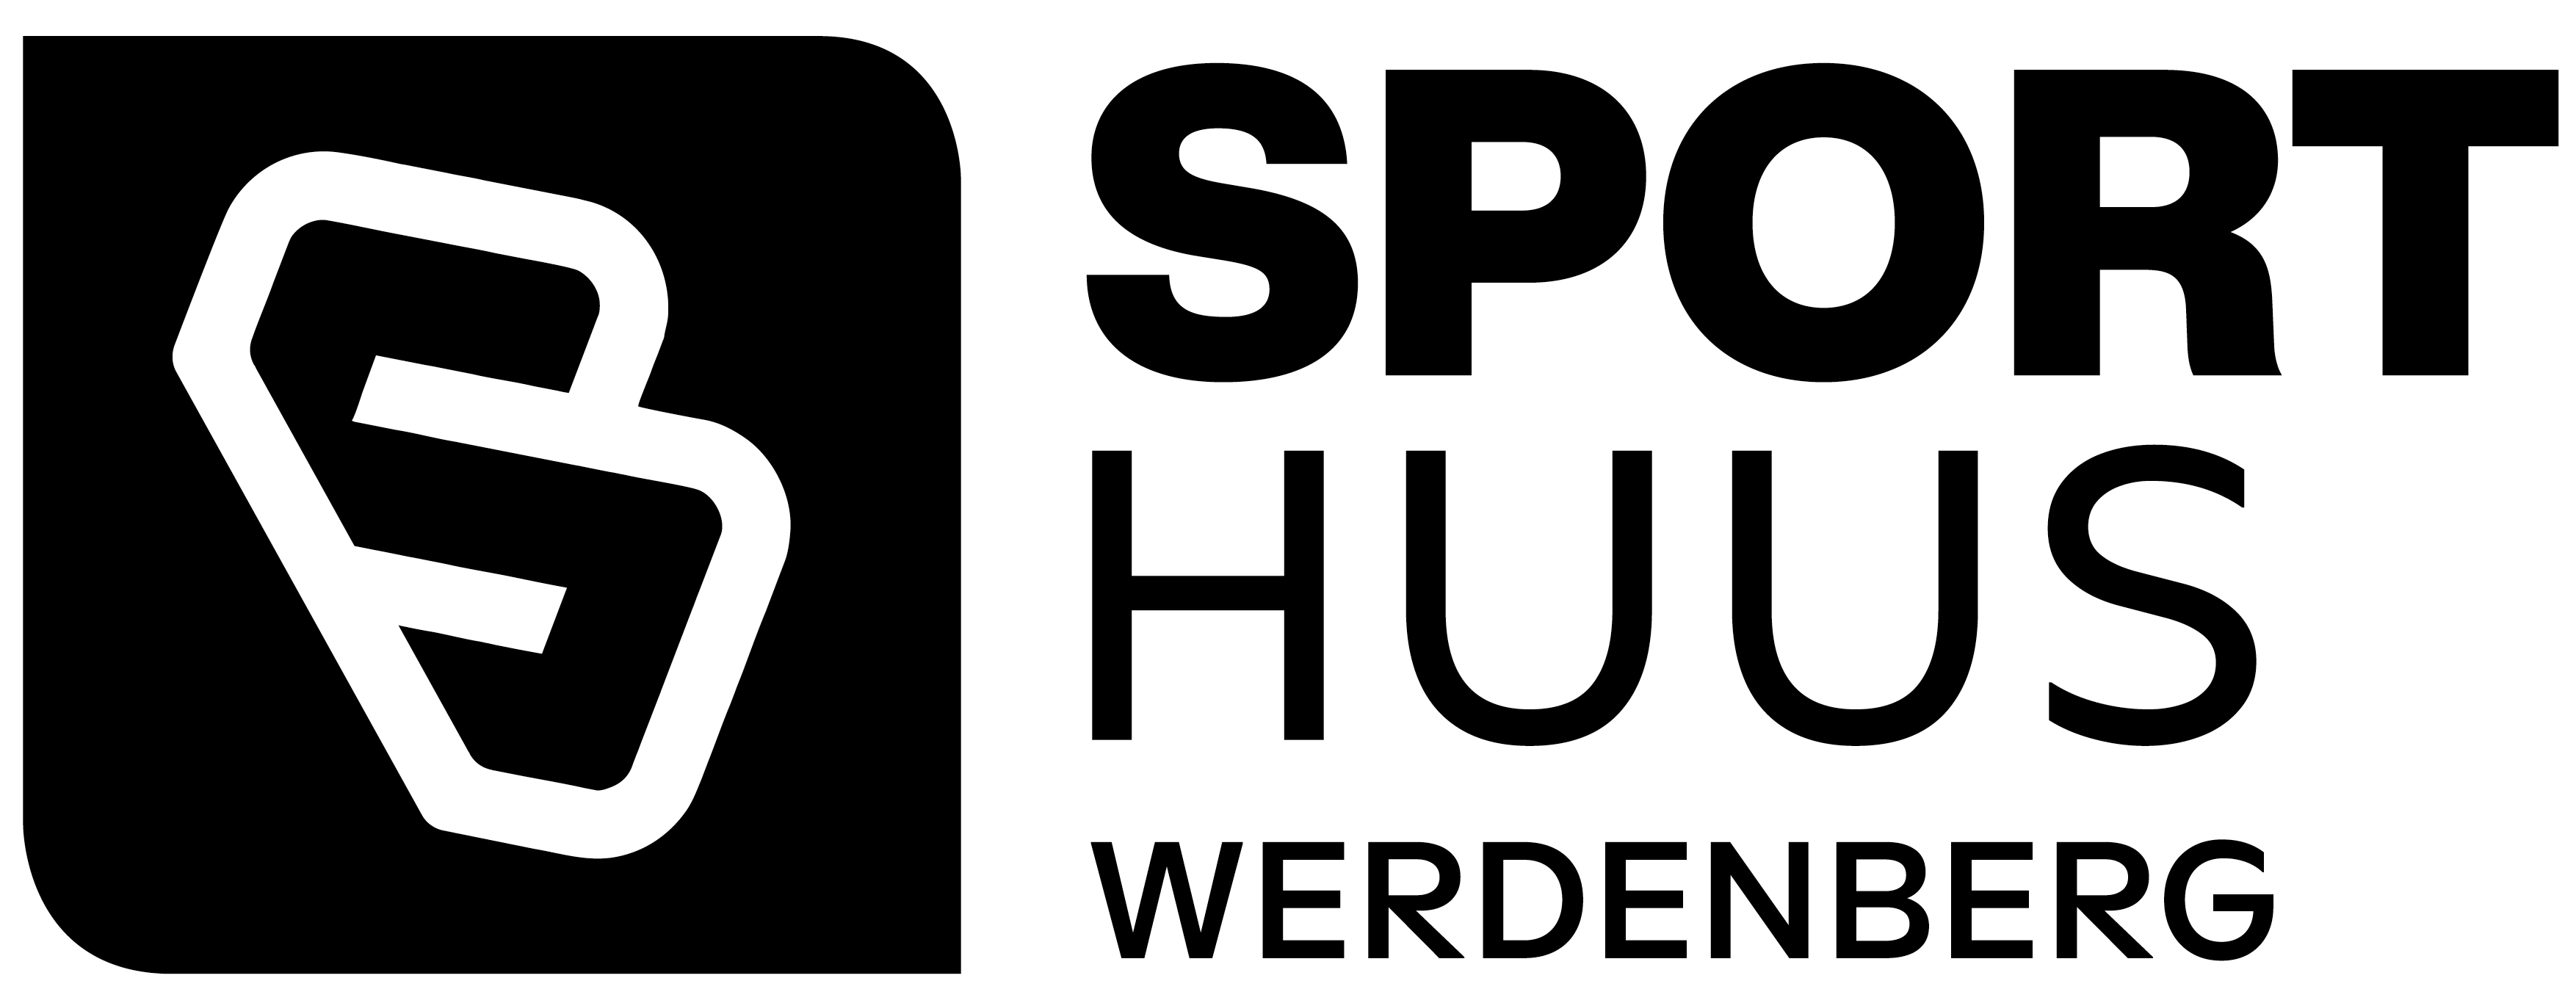 FF WERDENBERG Logo 2